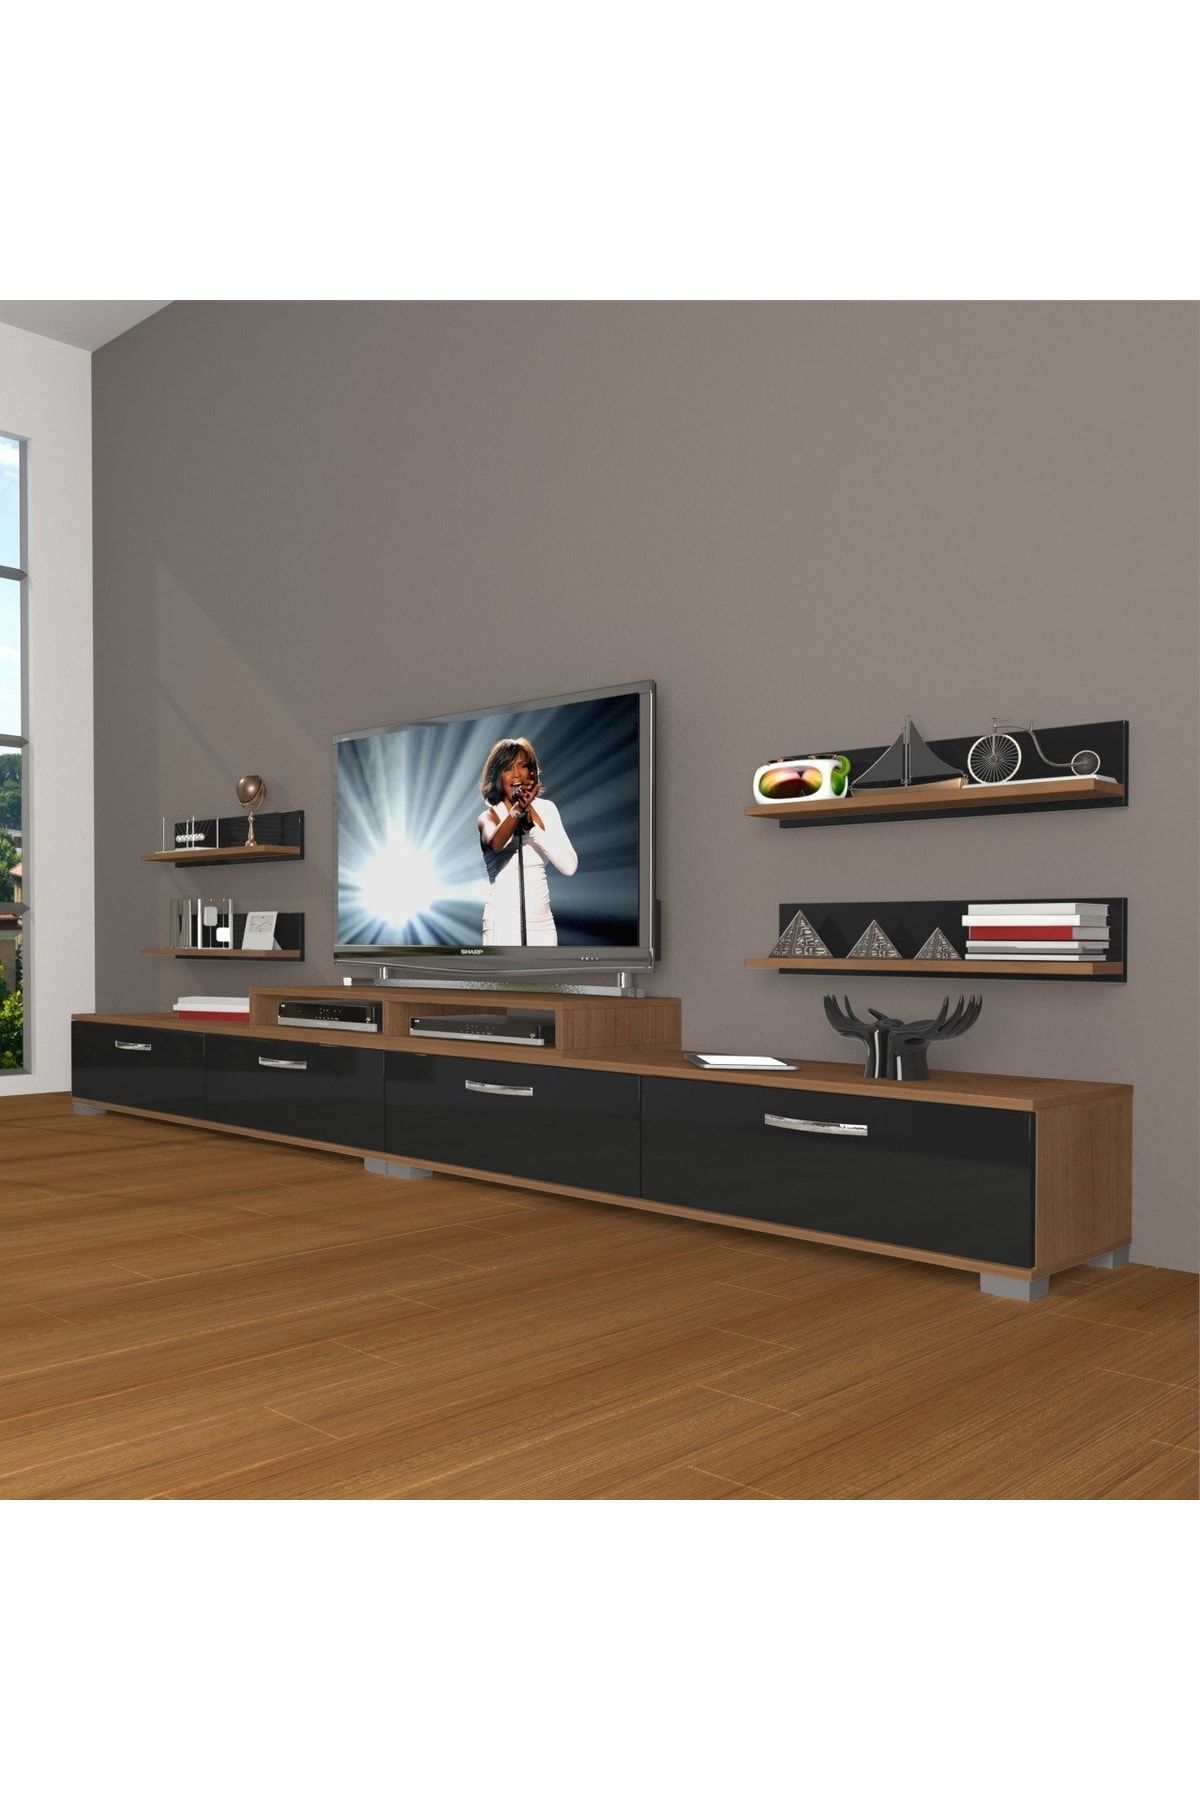 Decoraktiv Ekoflex 360r Slm Tv Ünitesi Tv Sehpası - Ceviz - Siyah